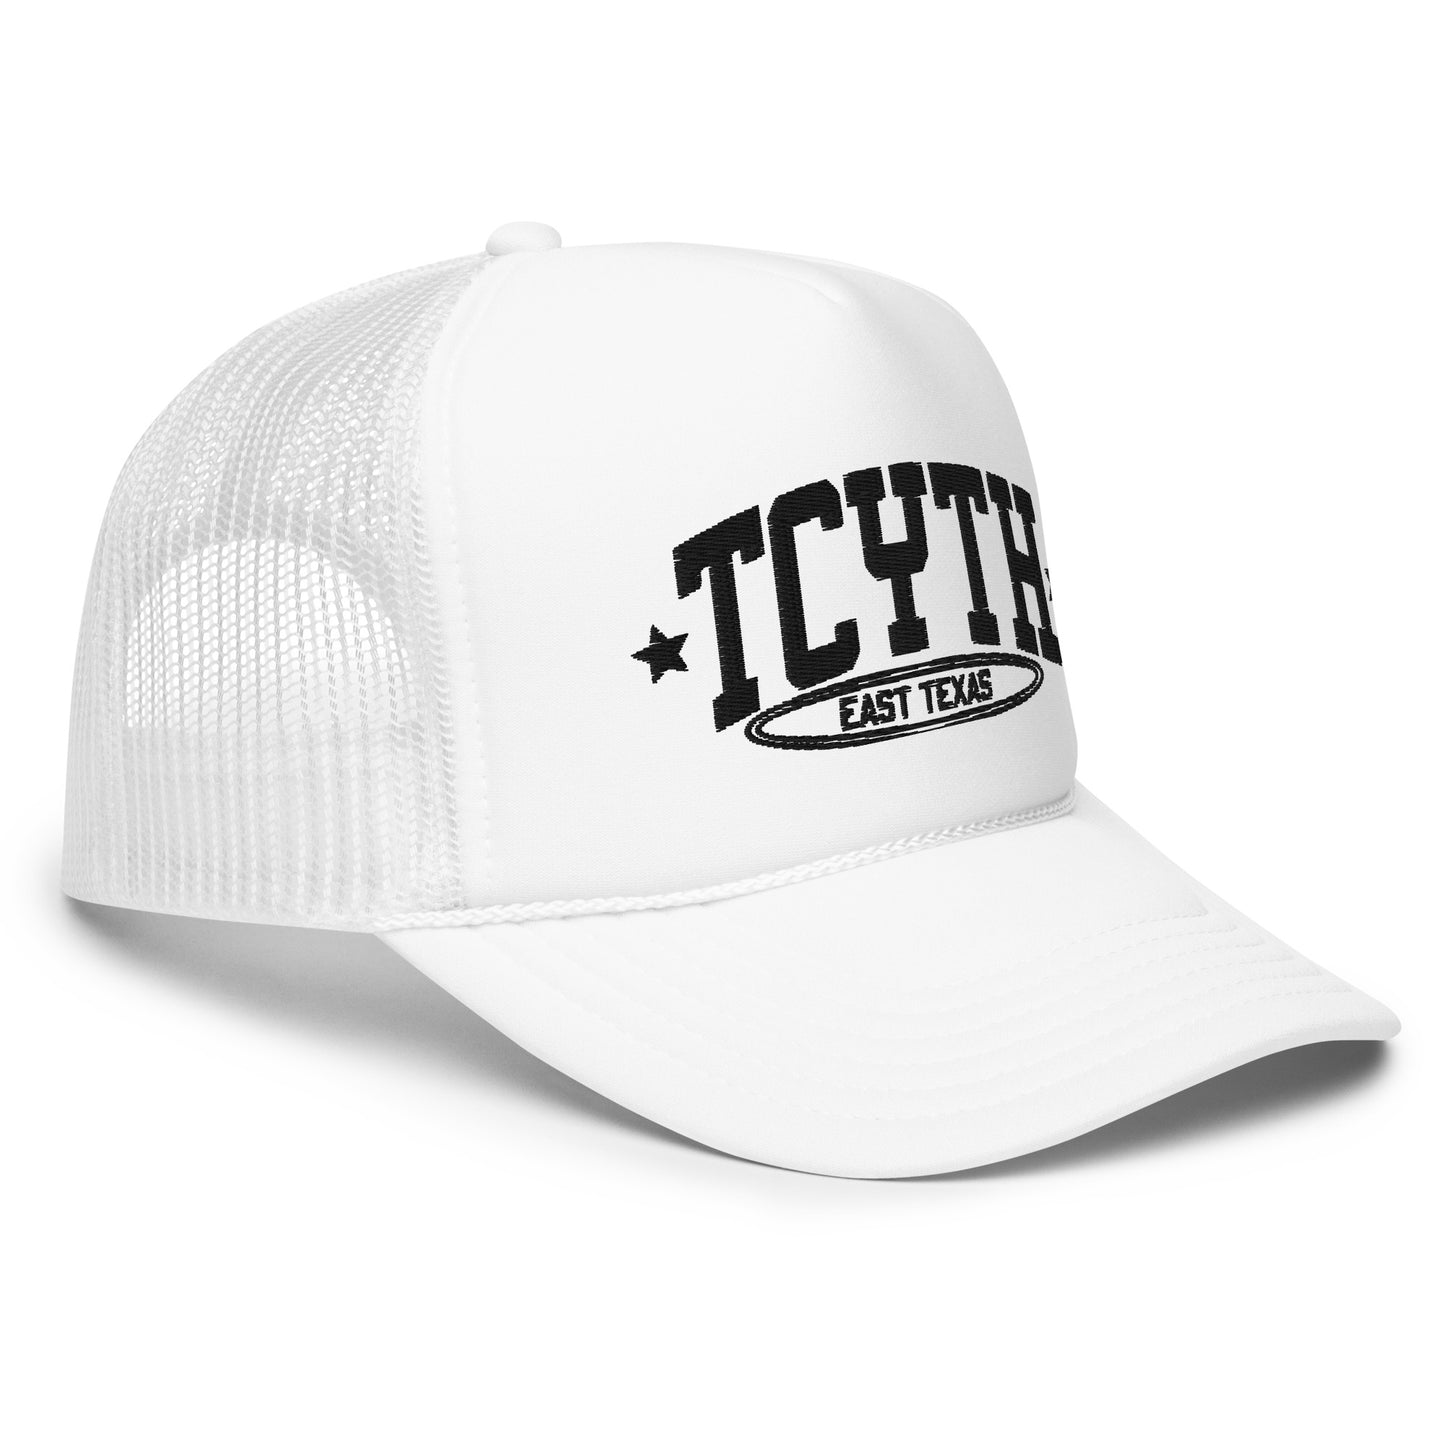 TCYTH Hat